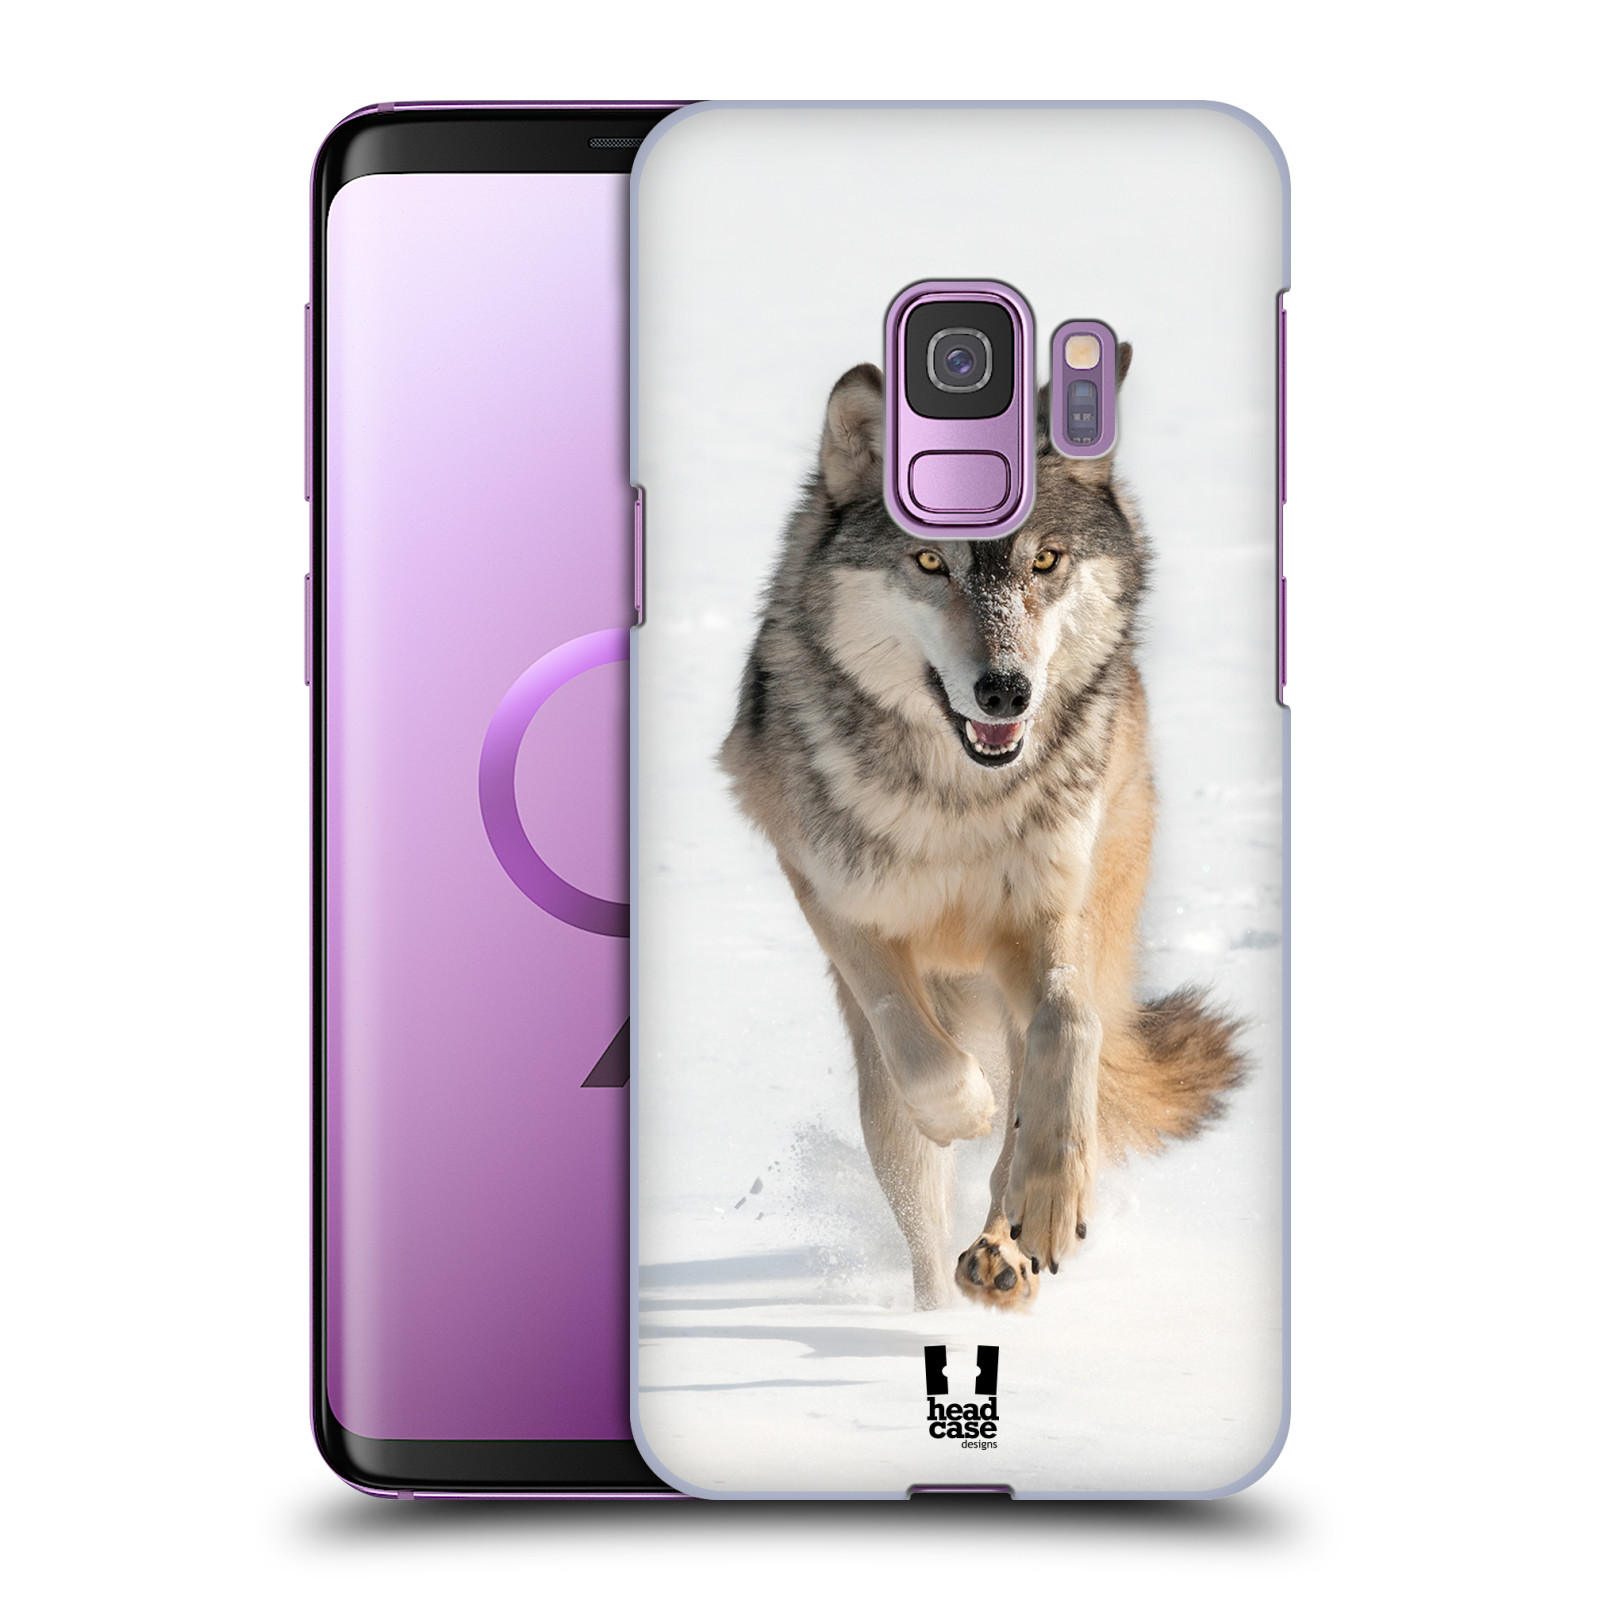 Zadní obal pro mobil Samsung Galaxy S9 - HEAD CASE - Svět zvířat divoký vlk